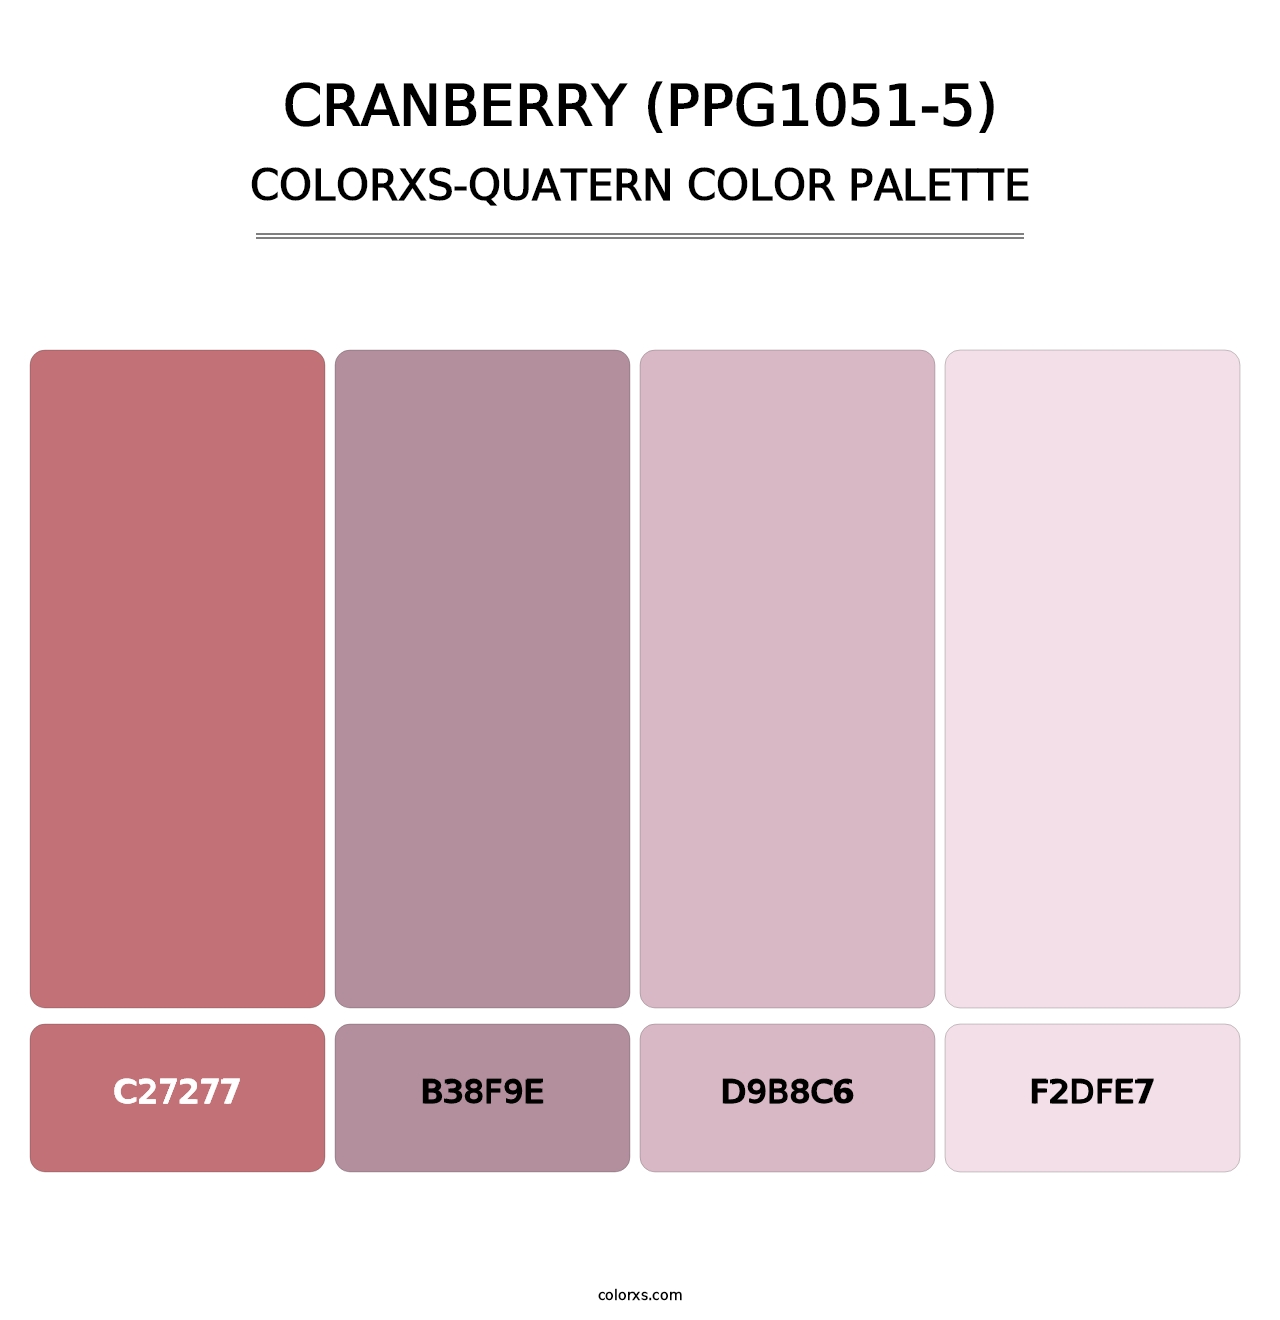 Cranberry (PPG1051-5) - Colorxs Quatern Palette